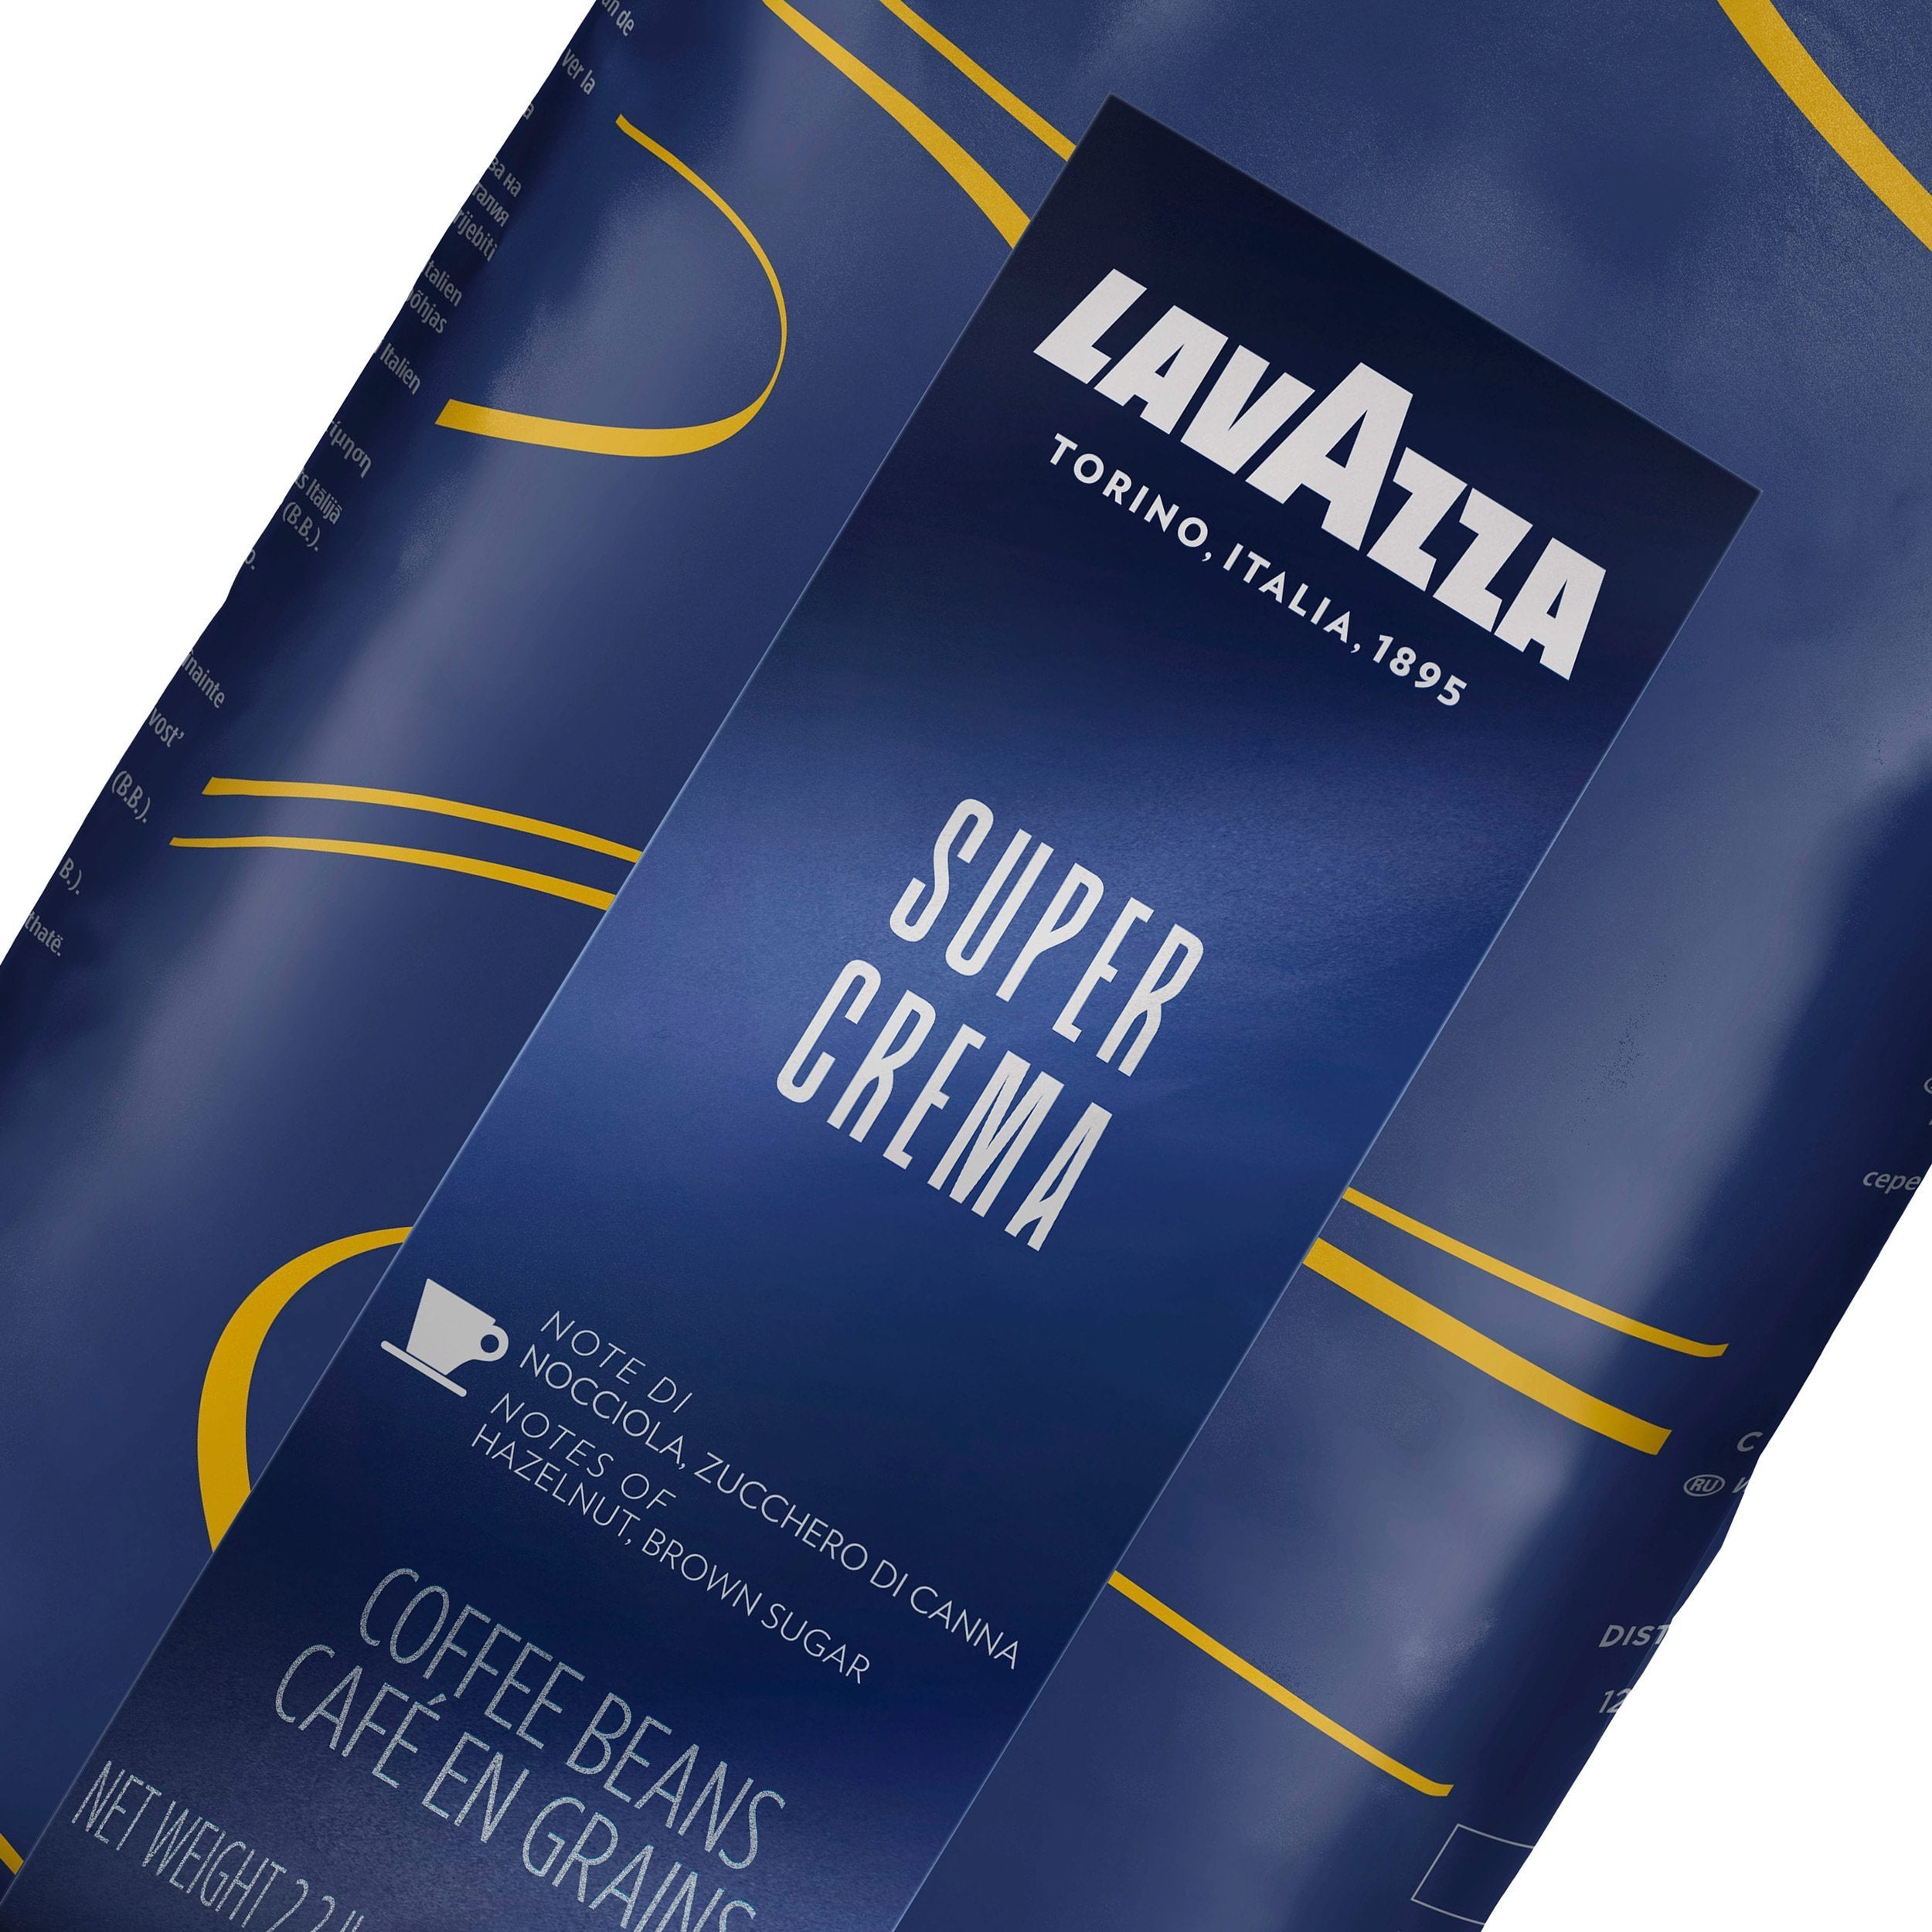 Lavazza Super Crema Coffee Beans 1 kg